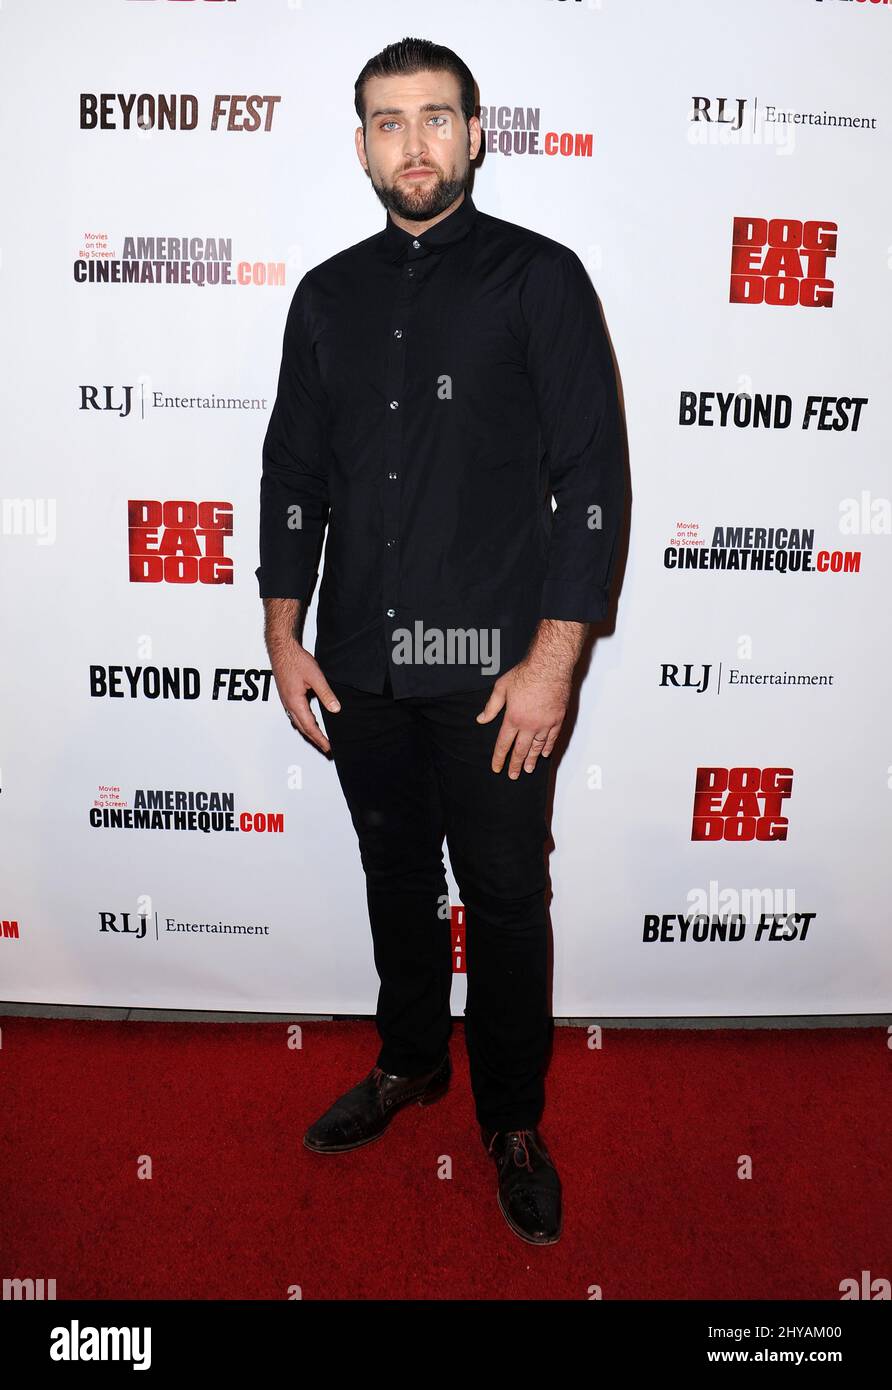 Weston Cage kommt zur Premiere von Dog Eat Dog im Rahmen des Beyond Fest 2016, das im September 30. 2016 im Egyptian Theatre, Hollywood, Los Angeles, stattfand. Stockfoto